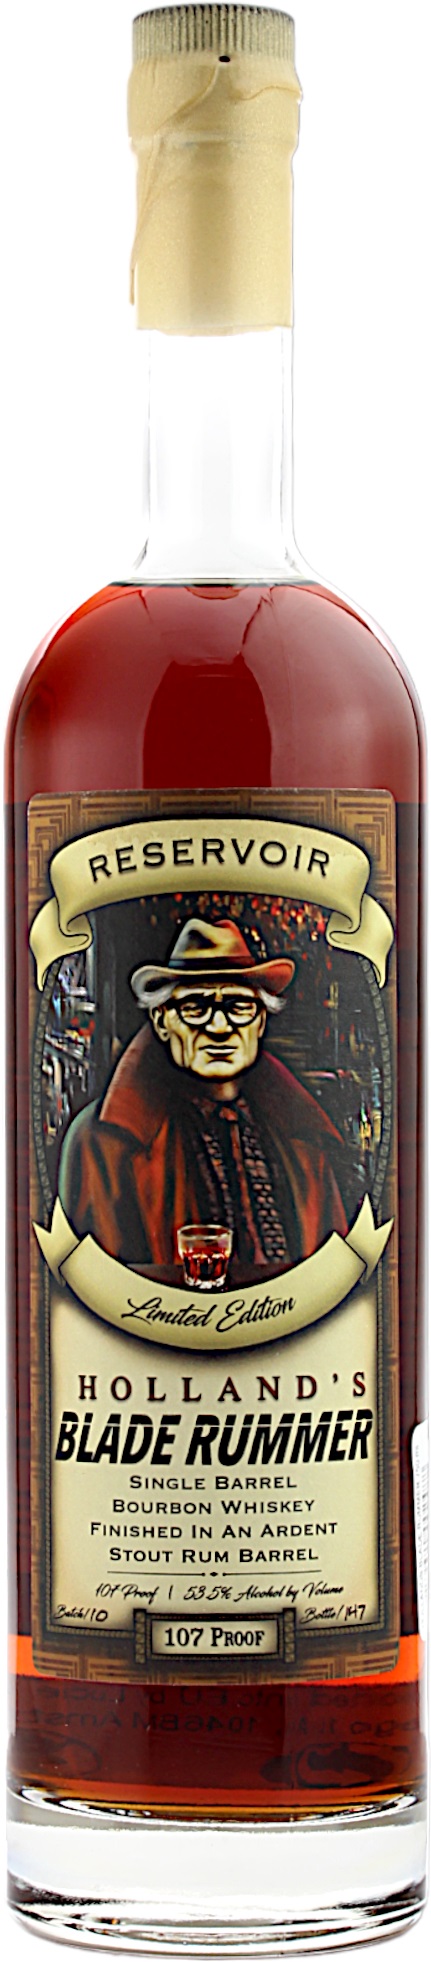 Reservoir Holland's Blade Rummer Batch 10 Bourbon Whiskey 53.5% 0,7l